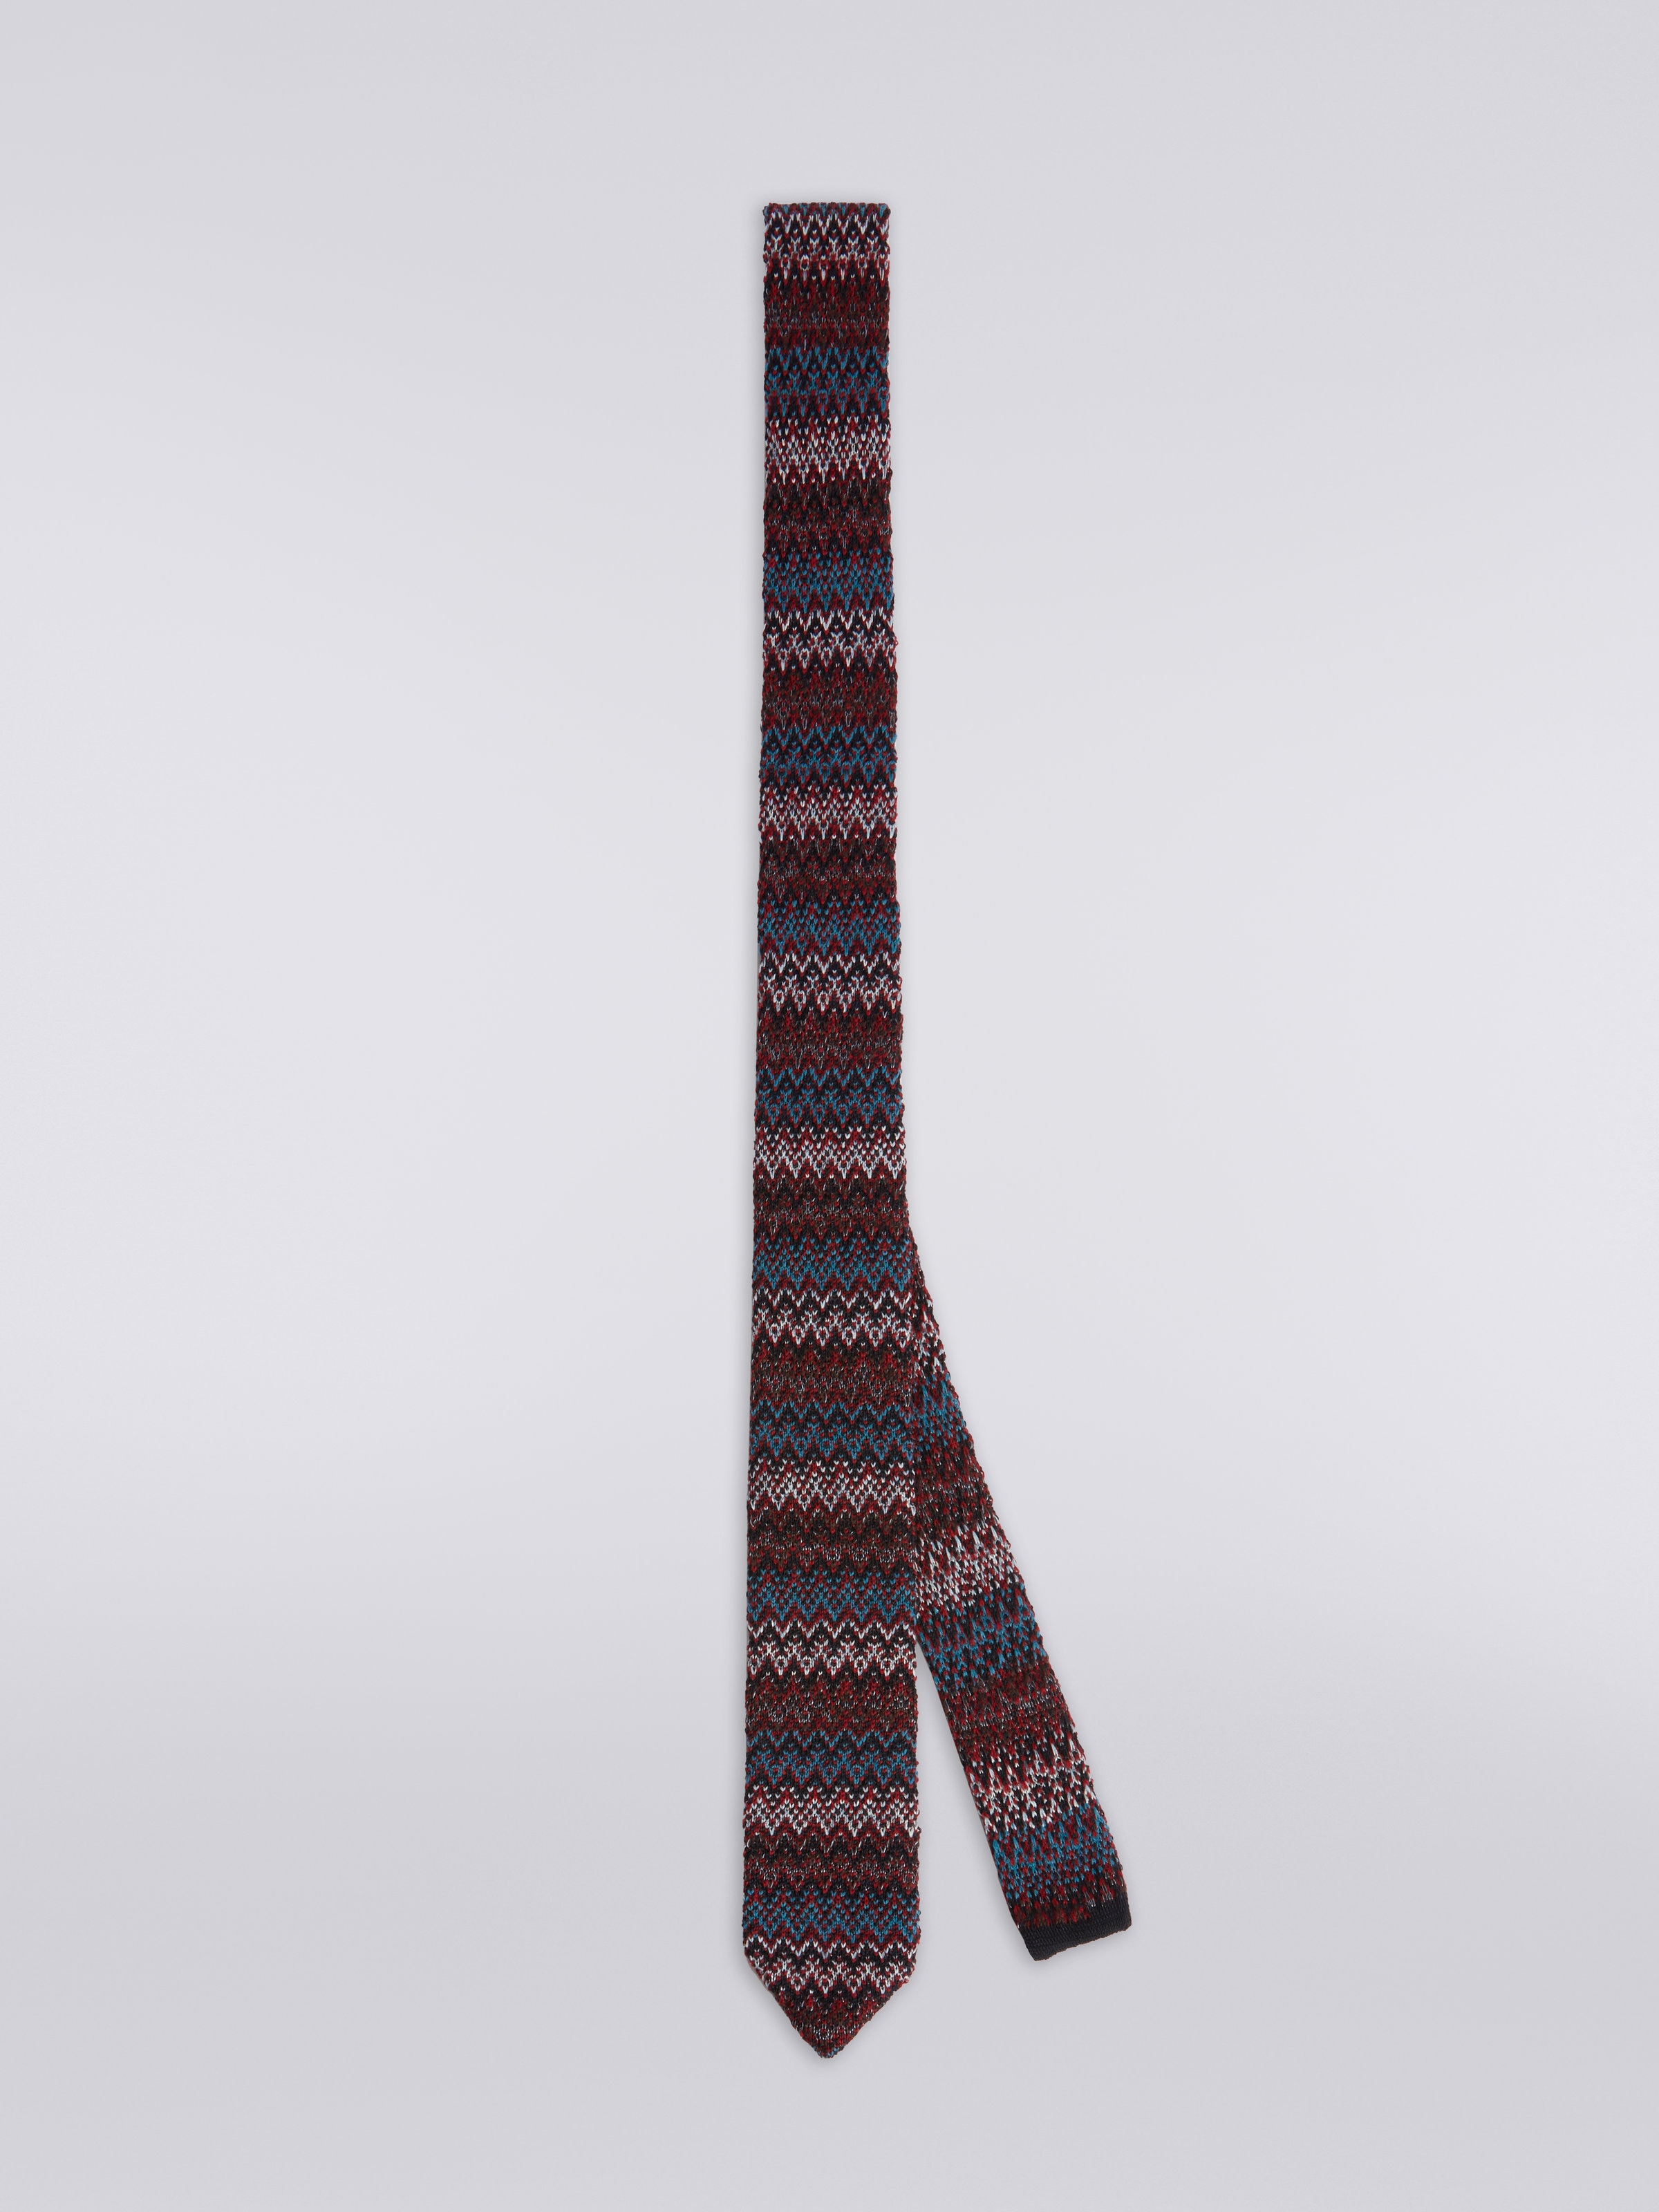 Cravatta in lana e seta chevron, Multicolore  - 0